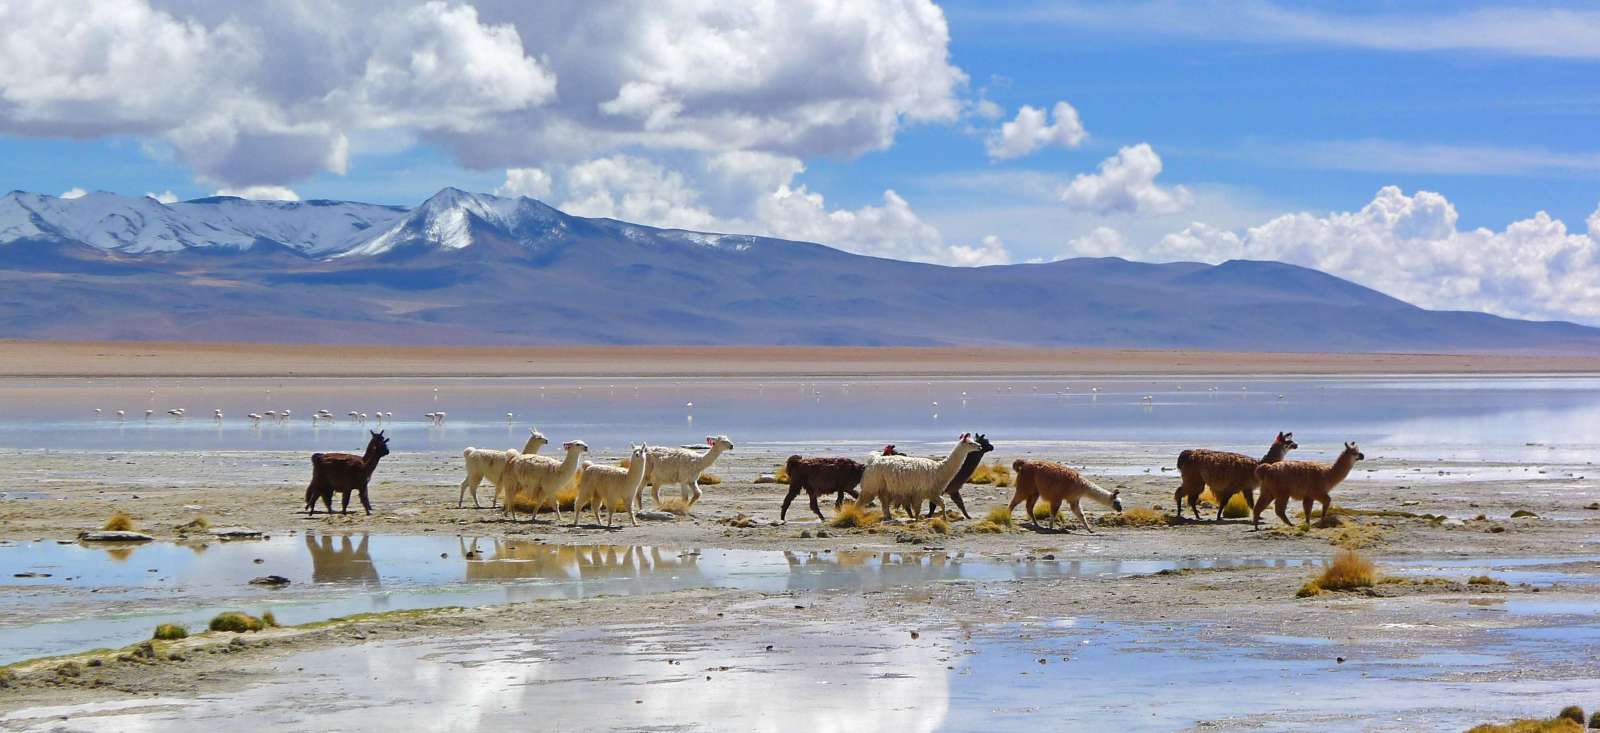 Voyage roadtrip - Les joyaux de la Bolivie